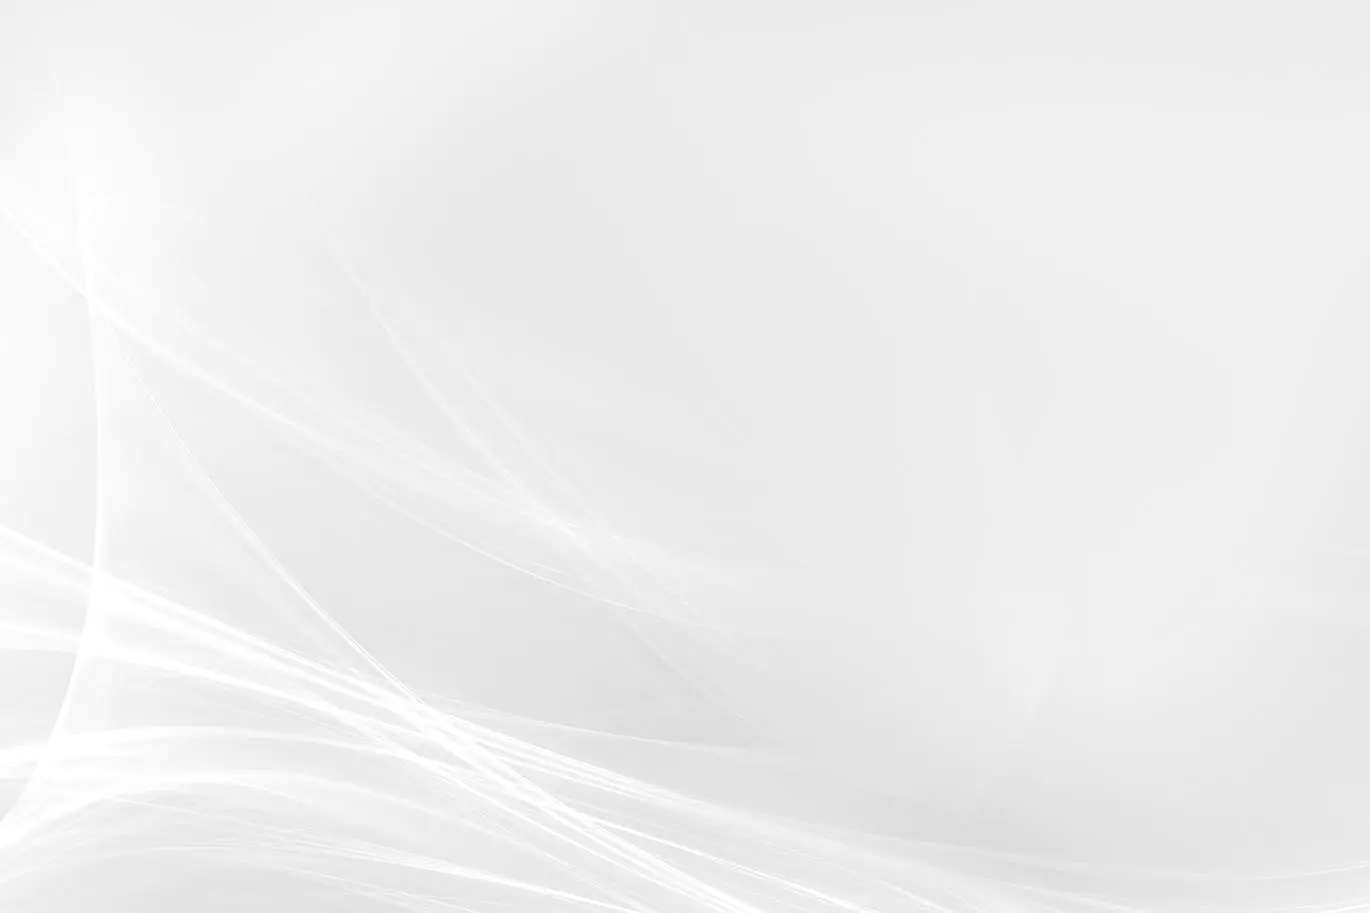 超高清抽象波浪线白色背景素材abstract White Background Jpg 背景底纹 素材下载 乐分享素材网